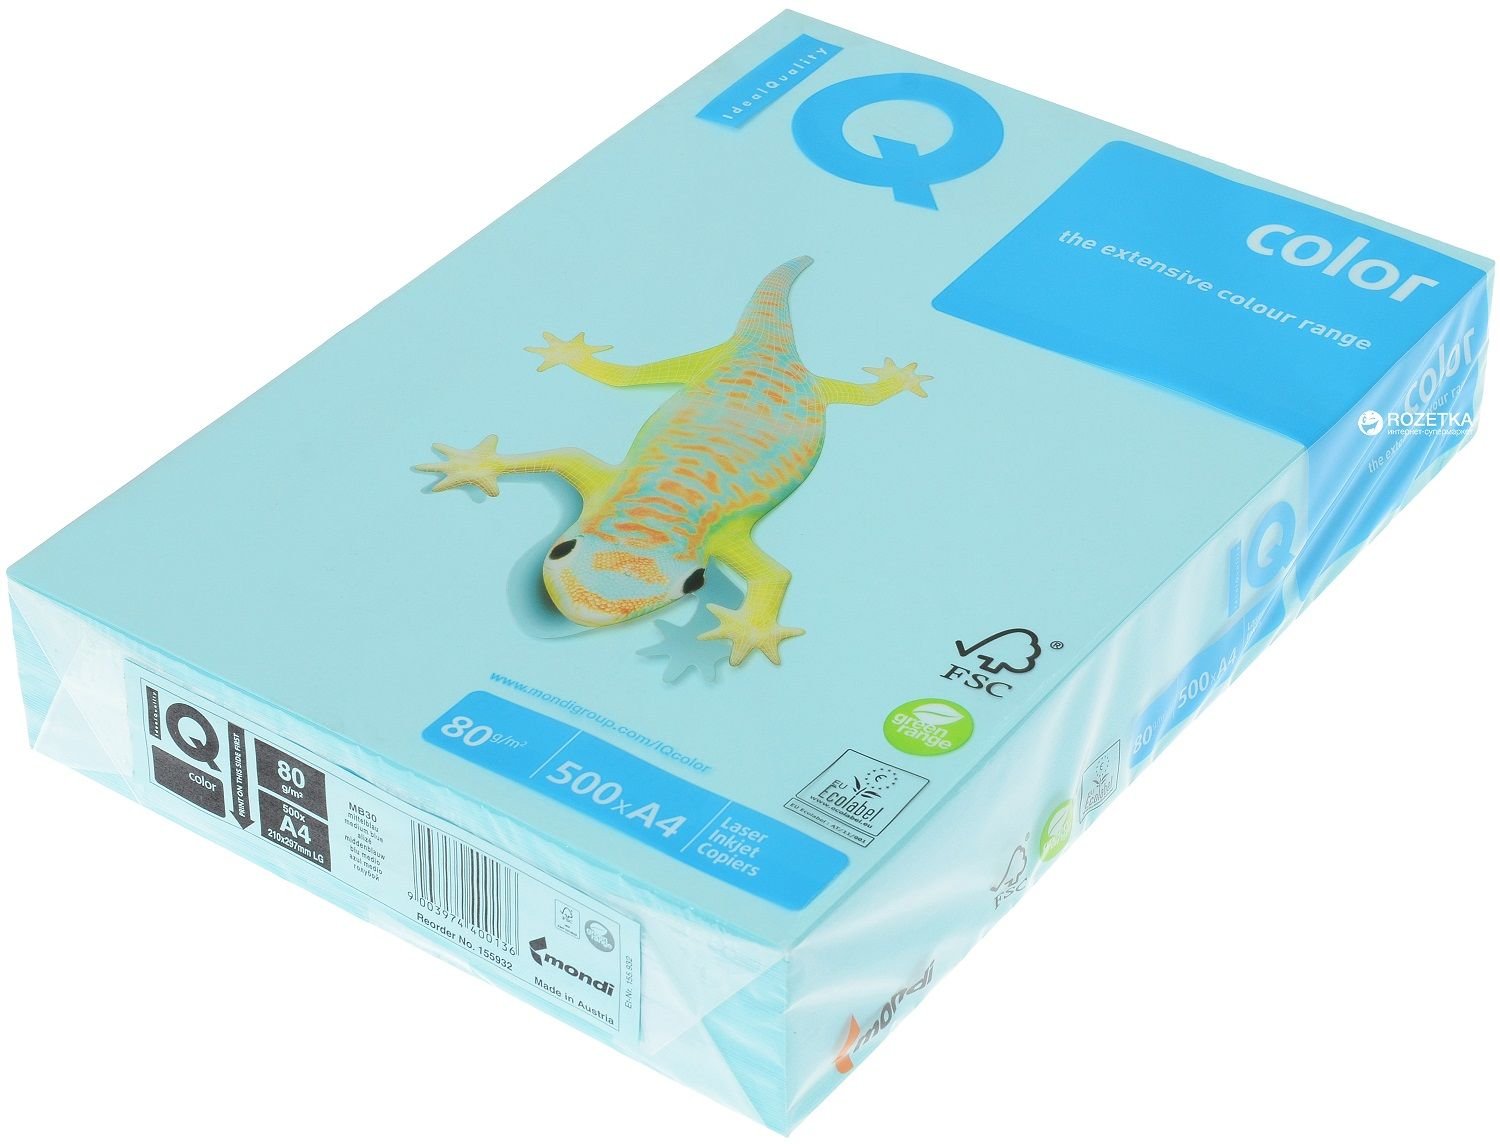 IQ A4 Fotokopi Kağıdı Renkli 80 g/m² 500'lü Paket Açık Mavi